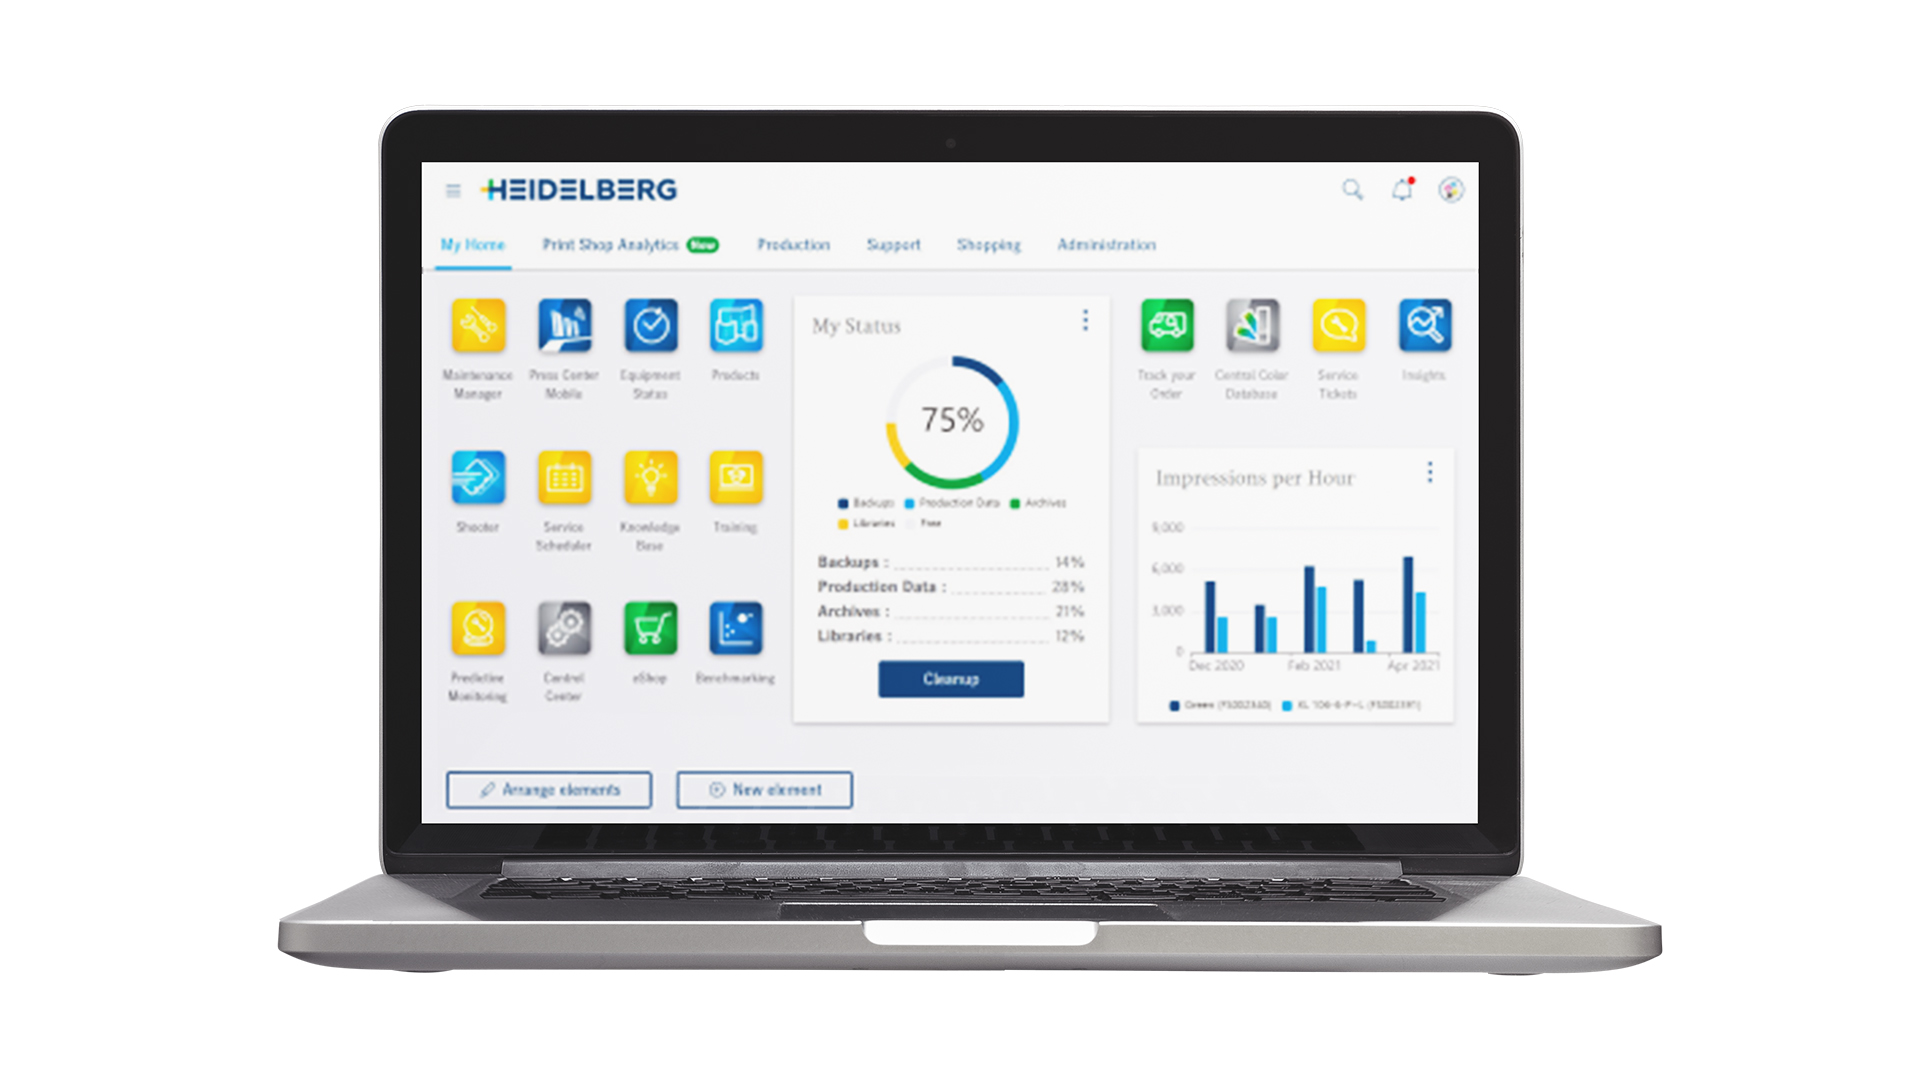 HEIDELBERG Customer Portal